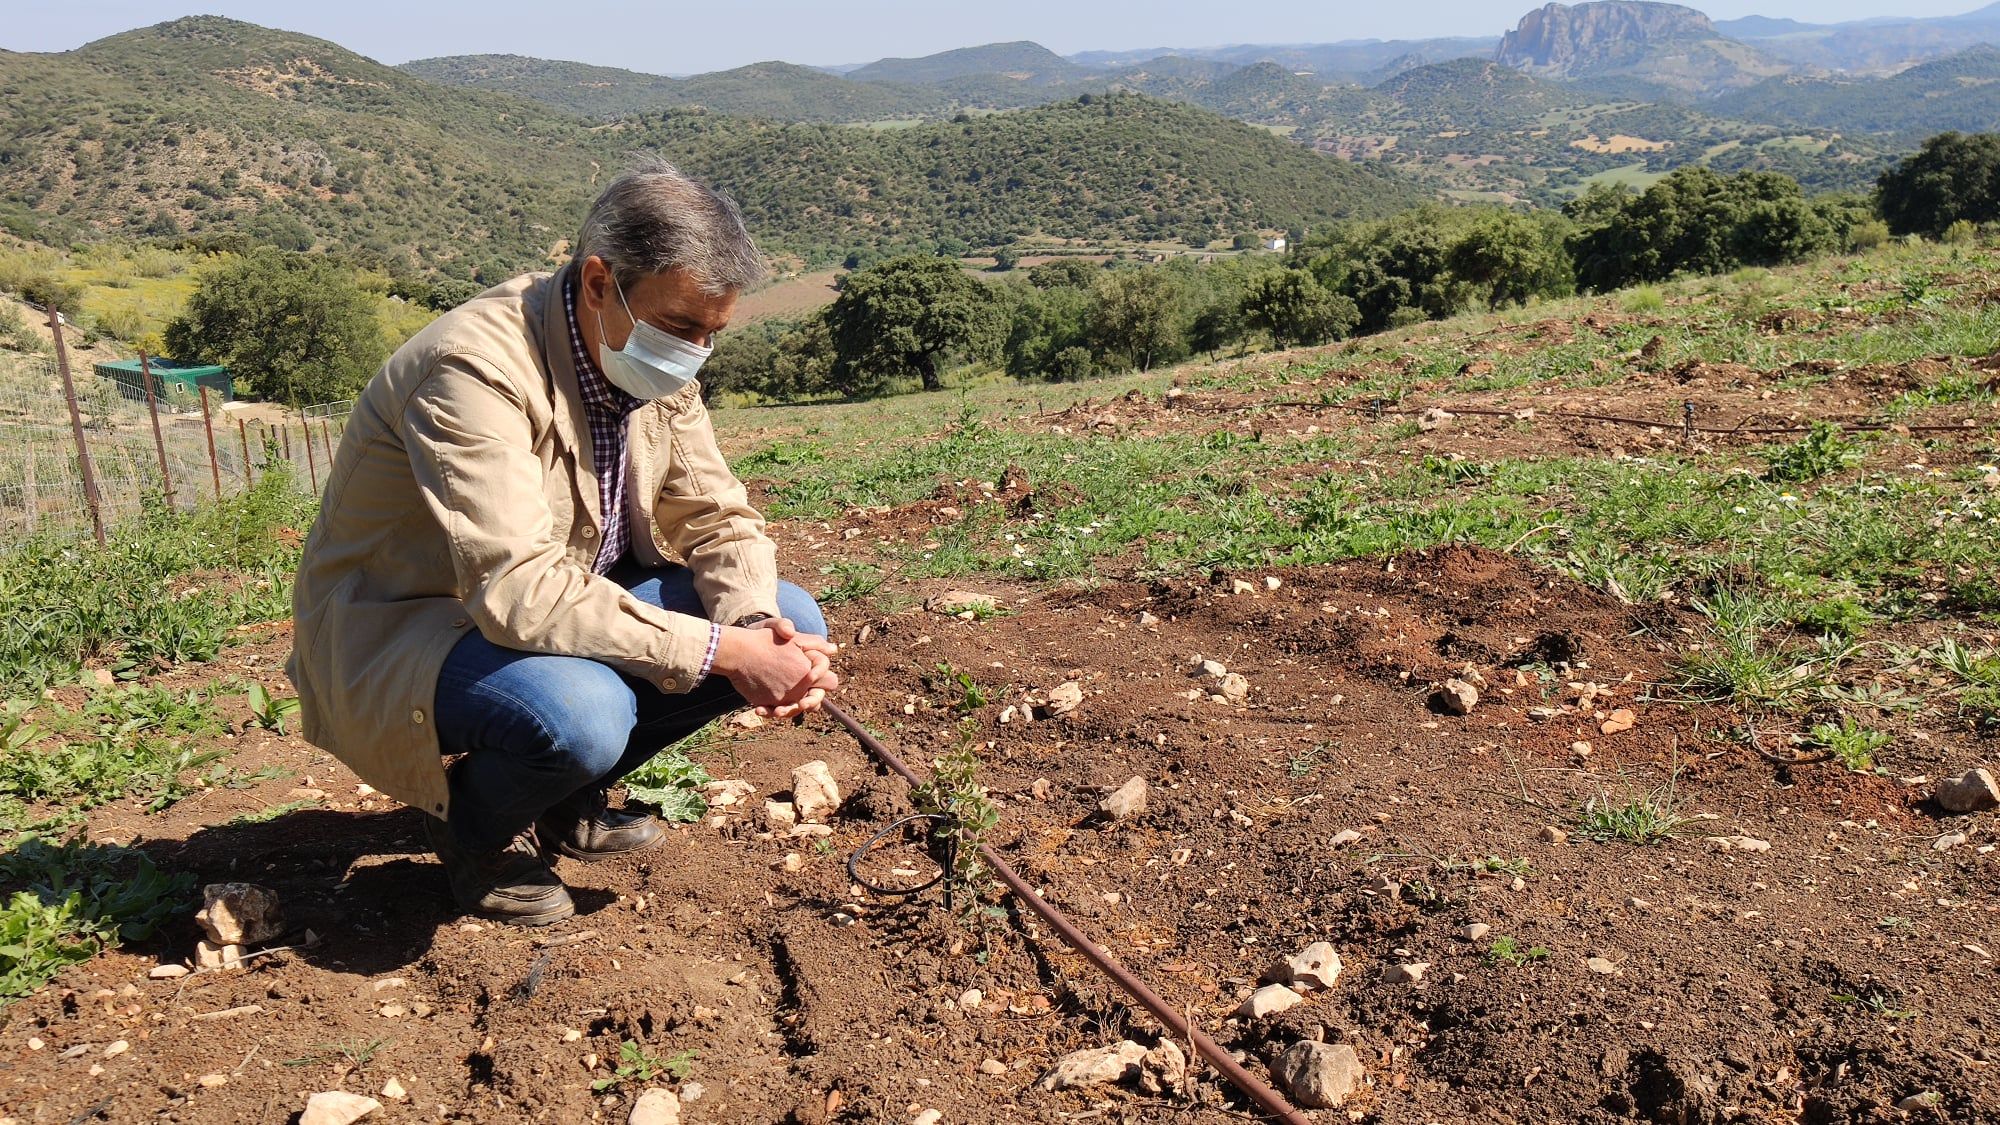 Iniciativa pionera en Algodonales al sembrar en suelo municipal dos hectáreas de 'oro negro'. En la imagen, el alcalde Ángel Acuña ante parte del sembrado de trufa negra.